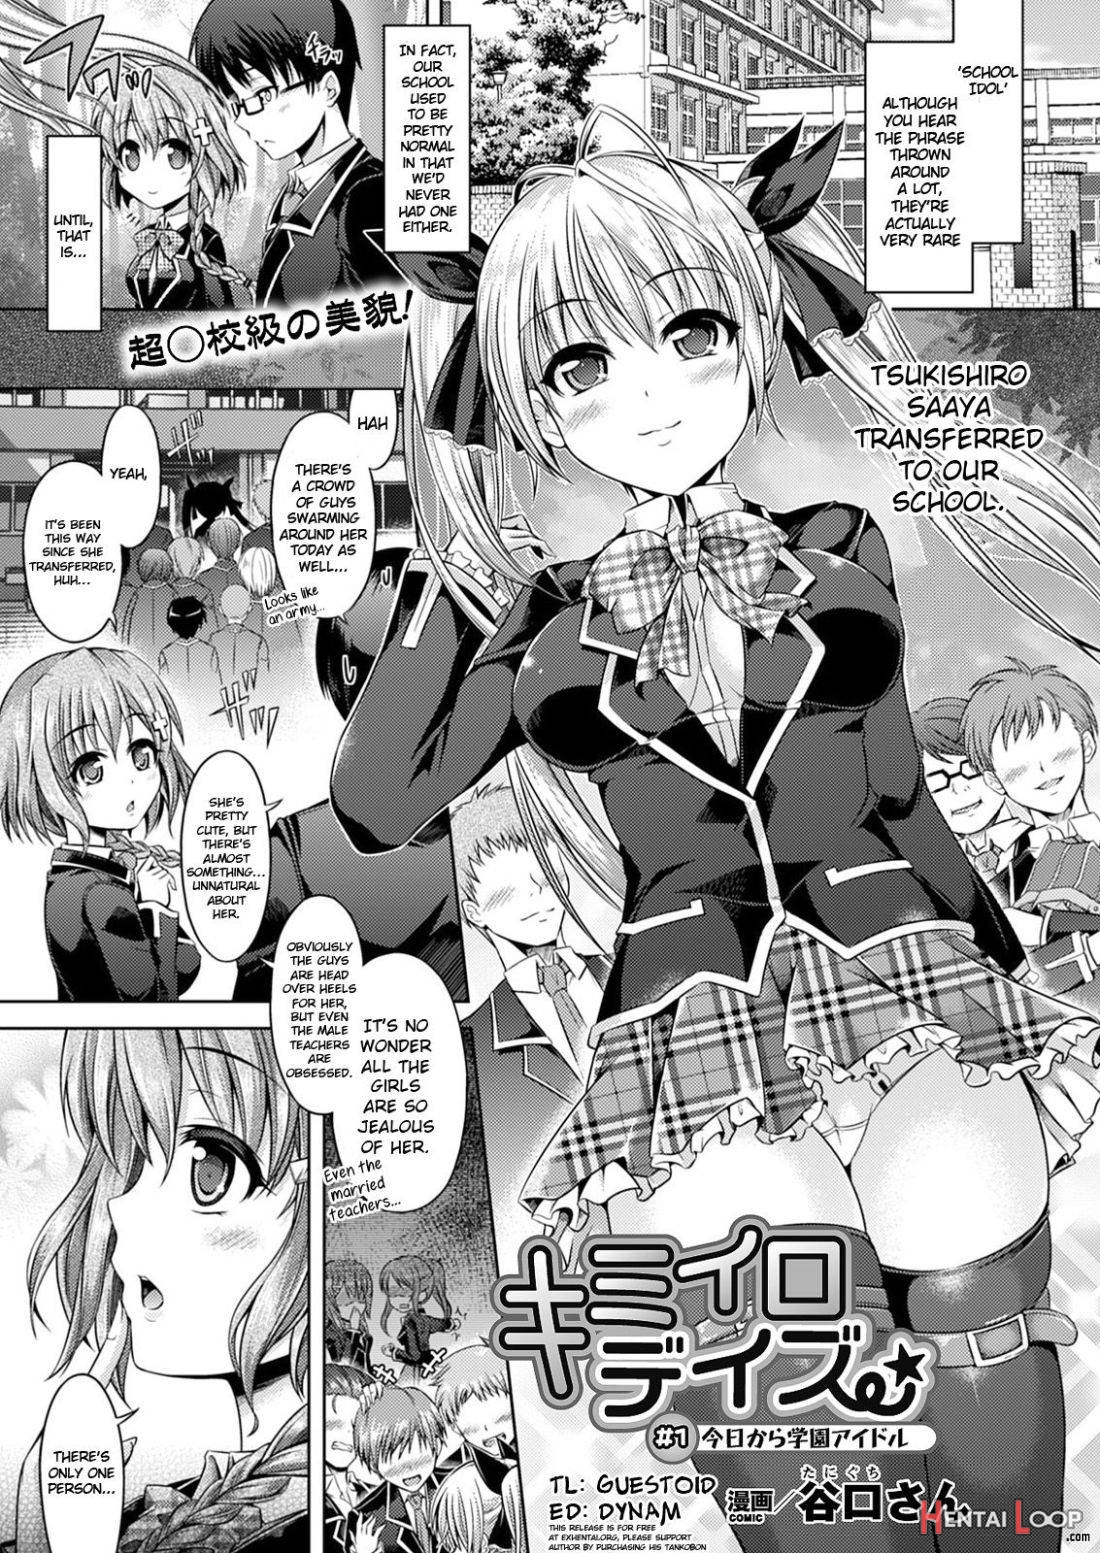 Kimi-iro Days # 1 page 1